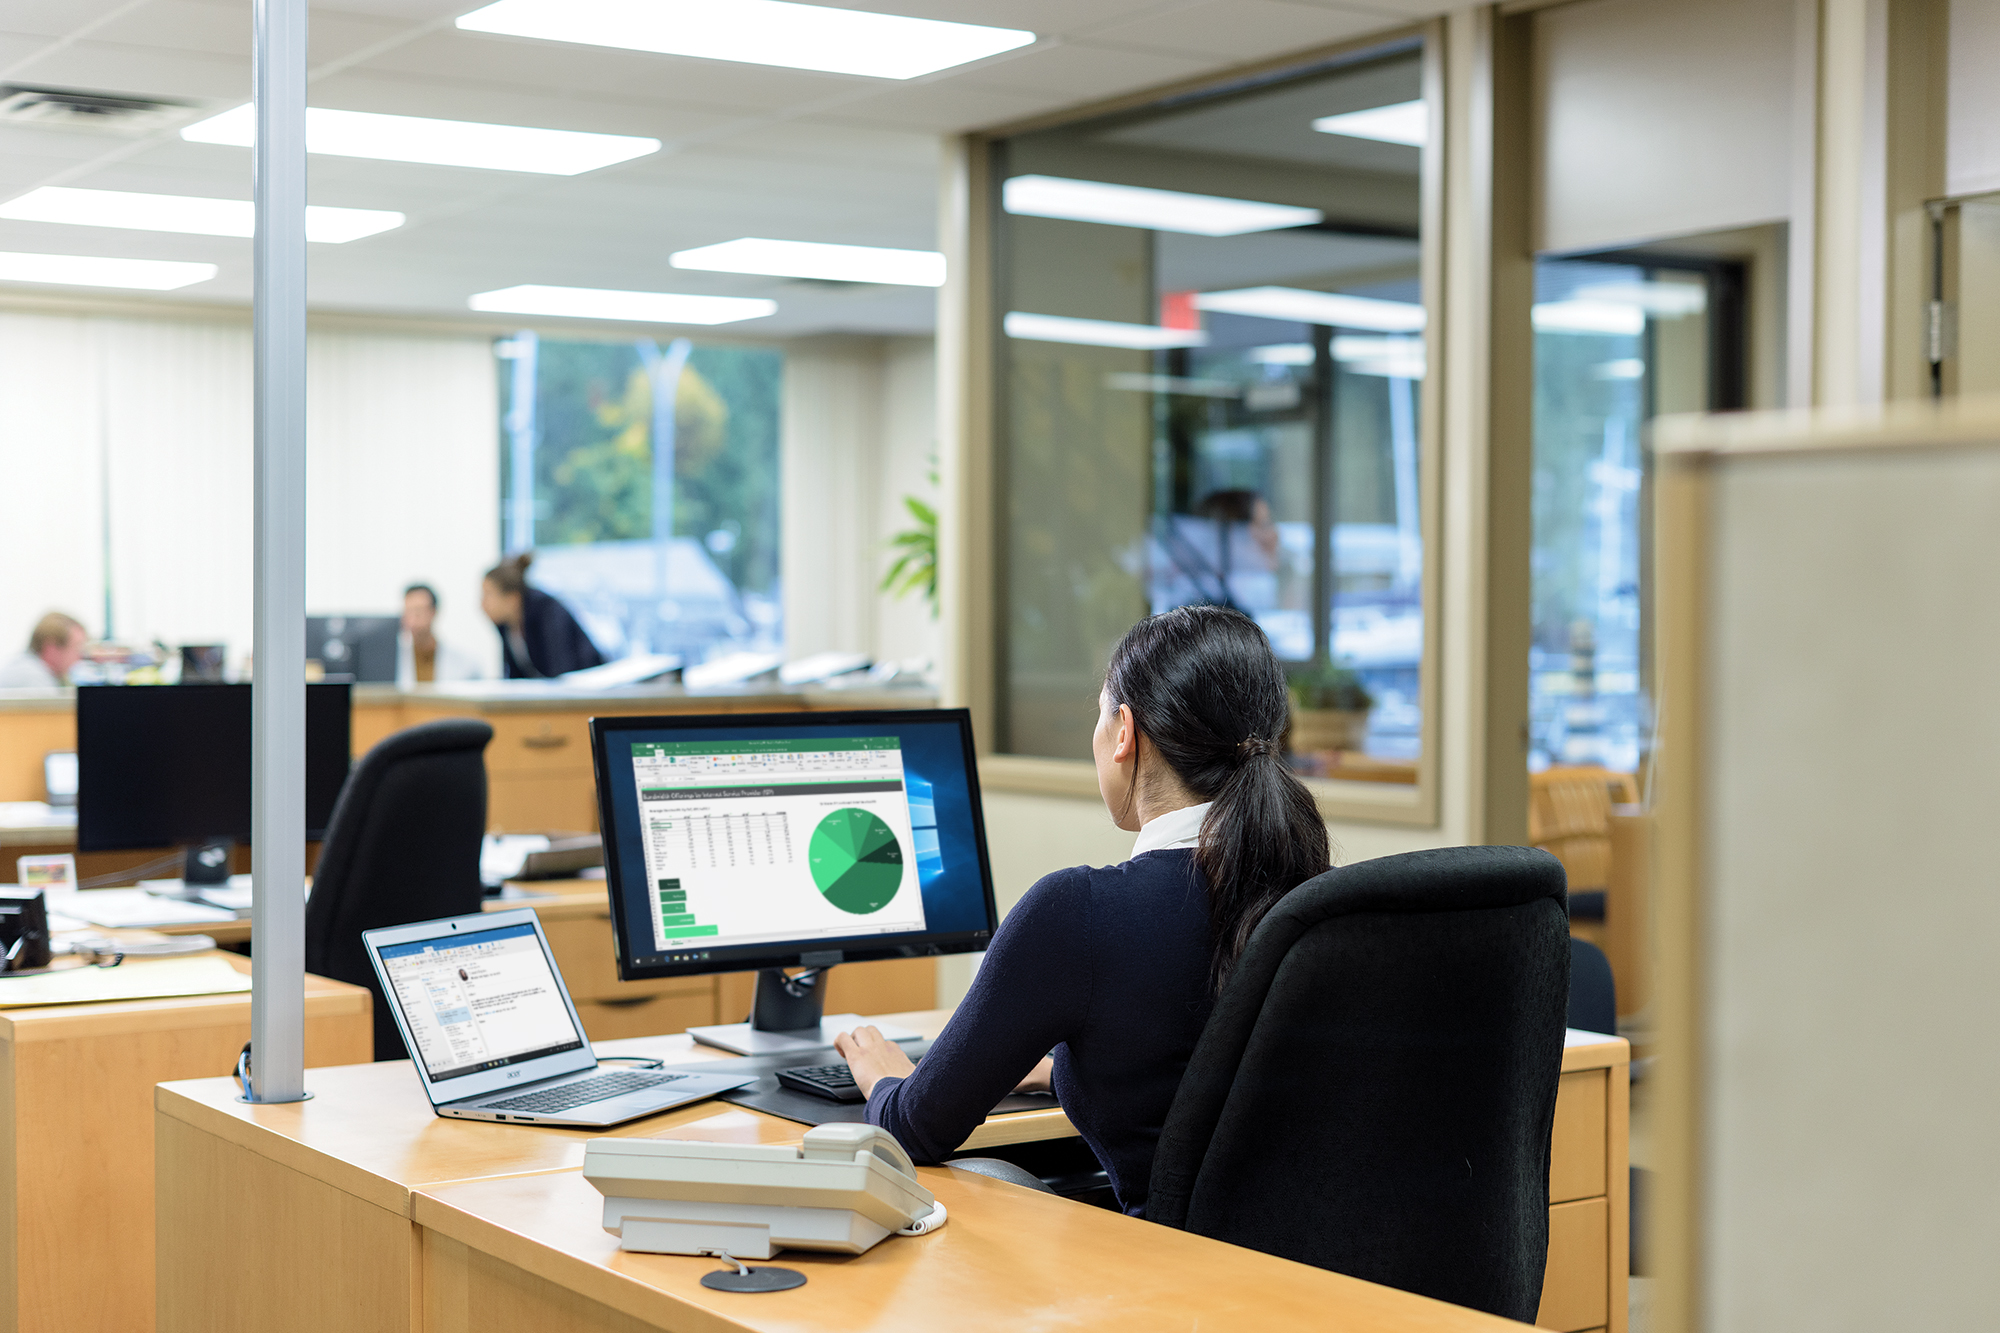 En kontorsarbetare tittar på diagram och tabeller på en skärm medan andra träffas i bakgrunden.